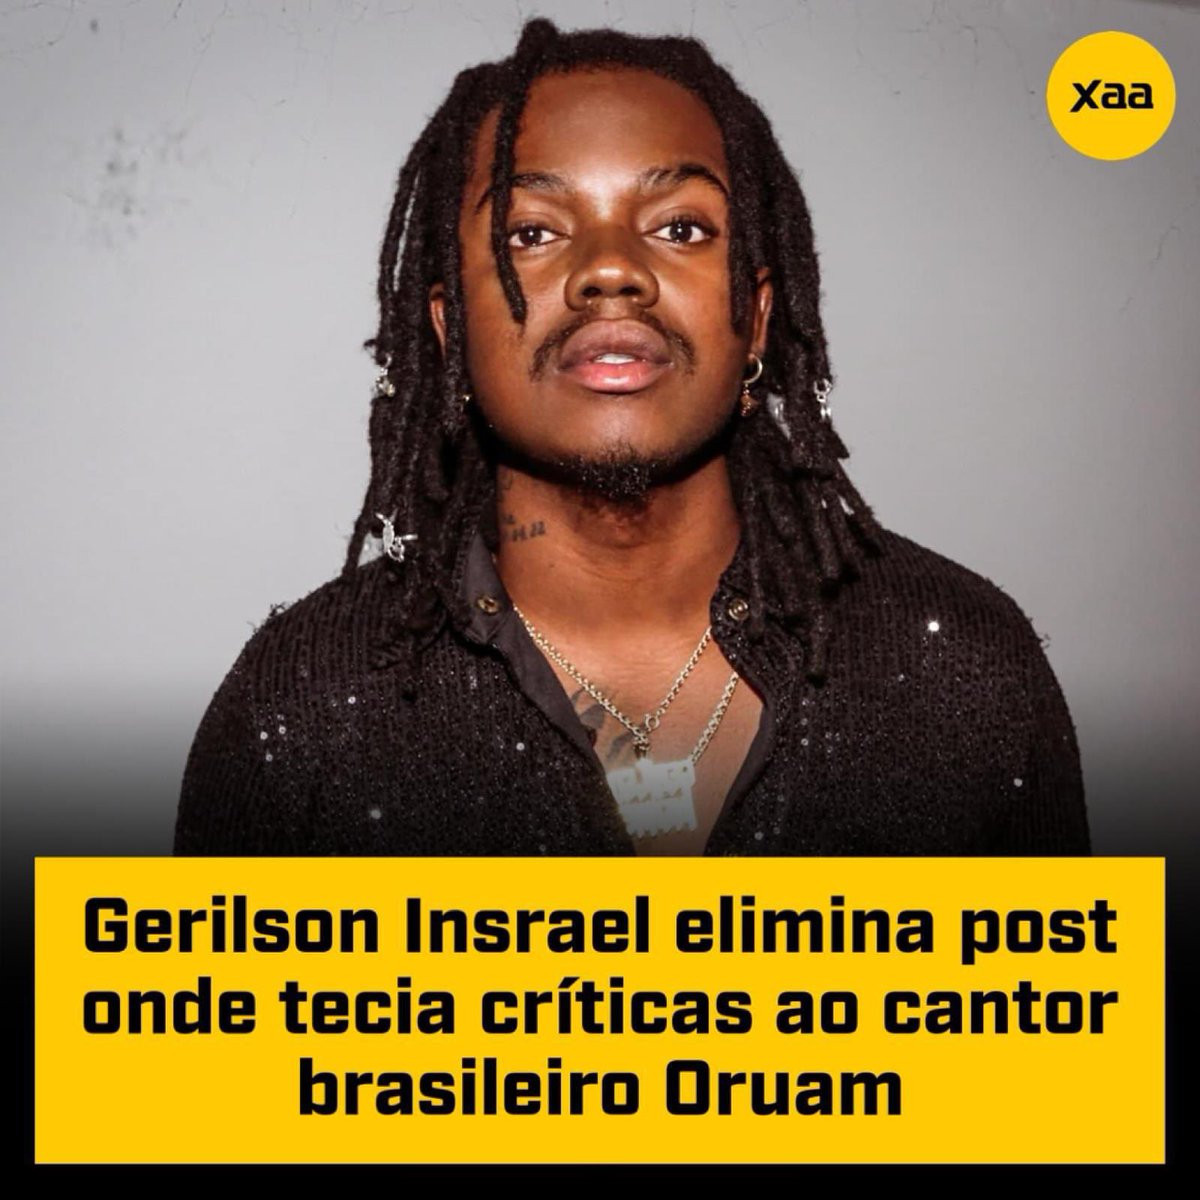 👉Gerilson Insrael elimina post onde tecia críticas ao cantor brasileiro Oruam. Assunto encerrado!